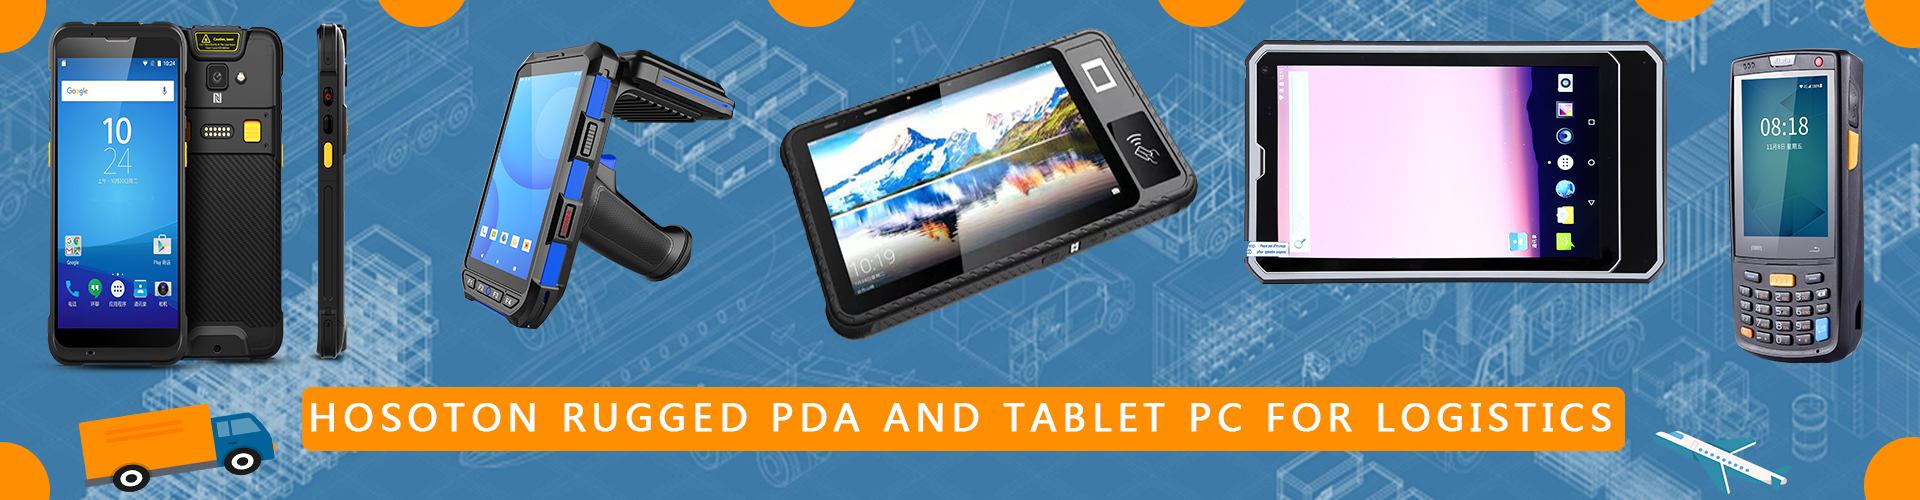 ಪೋರ್ಟಬಲ್-ಲಾಜಿಸ್ಟಿಕ್ PDA-ಸ್ಕ್ಯಾನರ್-with-android11